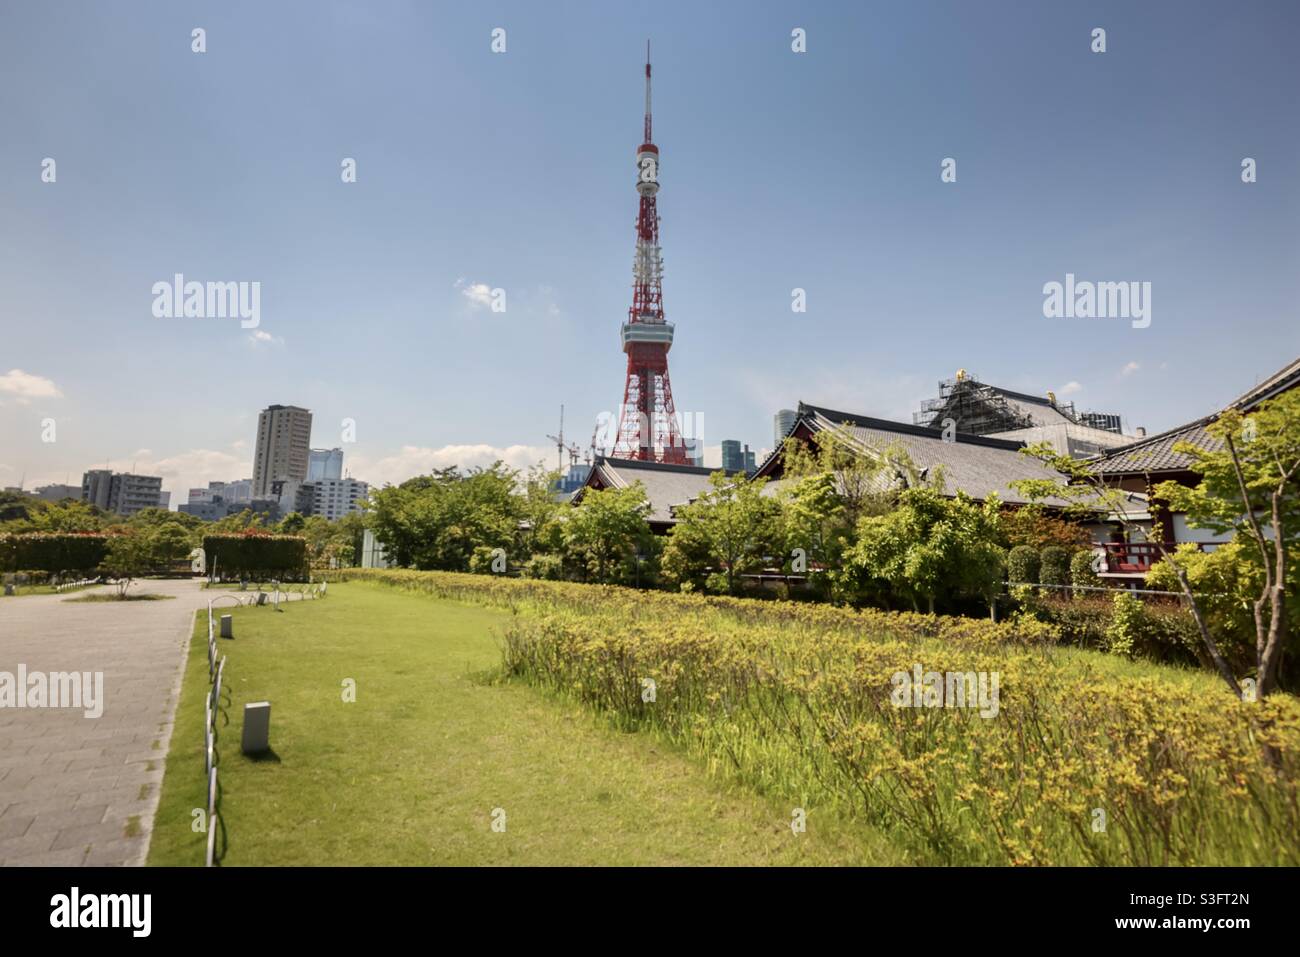 La torre de Tokio está situada en 4 Chome 2-8, Shiba Park en Minato Ward, Tokio, Japón, 2nd Torre más alta de Japón, con una altura de 332,9 metros. Está cerca del Templo Zozoji. Foto de stock